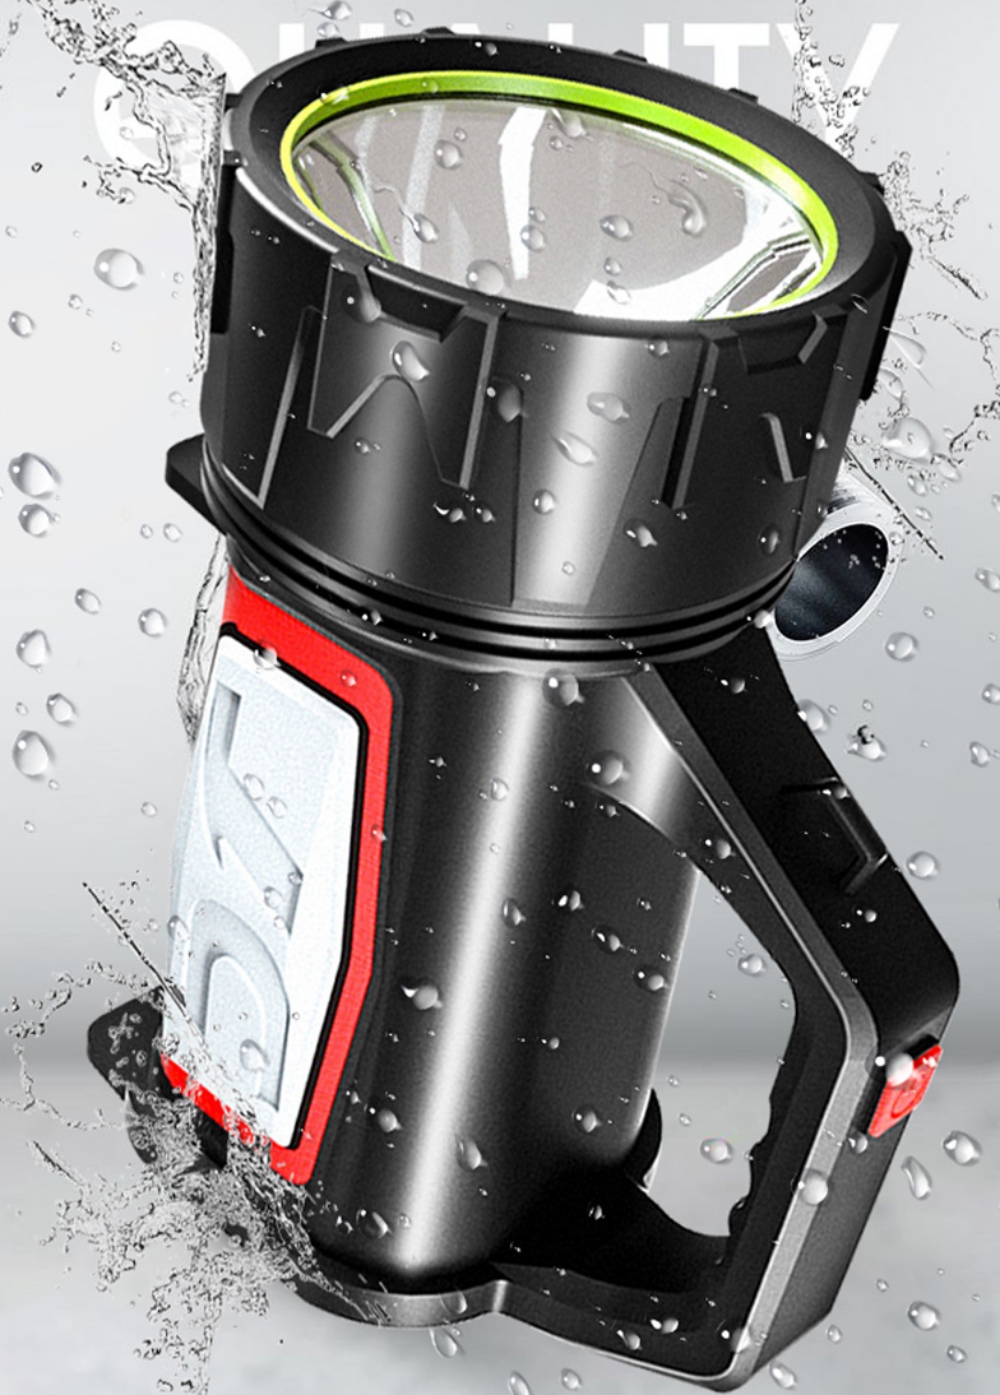 Đèn pin siêu sáng 1500 lumens, tầm chiếu xa 1000m thương hiệu Smiling Shark, hỗ trợ tìm kiếm cứu nạn, làm sạc dự phòng, làm đèn cắm trại, chống nước, hoạt động tốt trong thời tiết mưa bão, thời lượng pin 25h - Hàng chính hãng